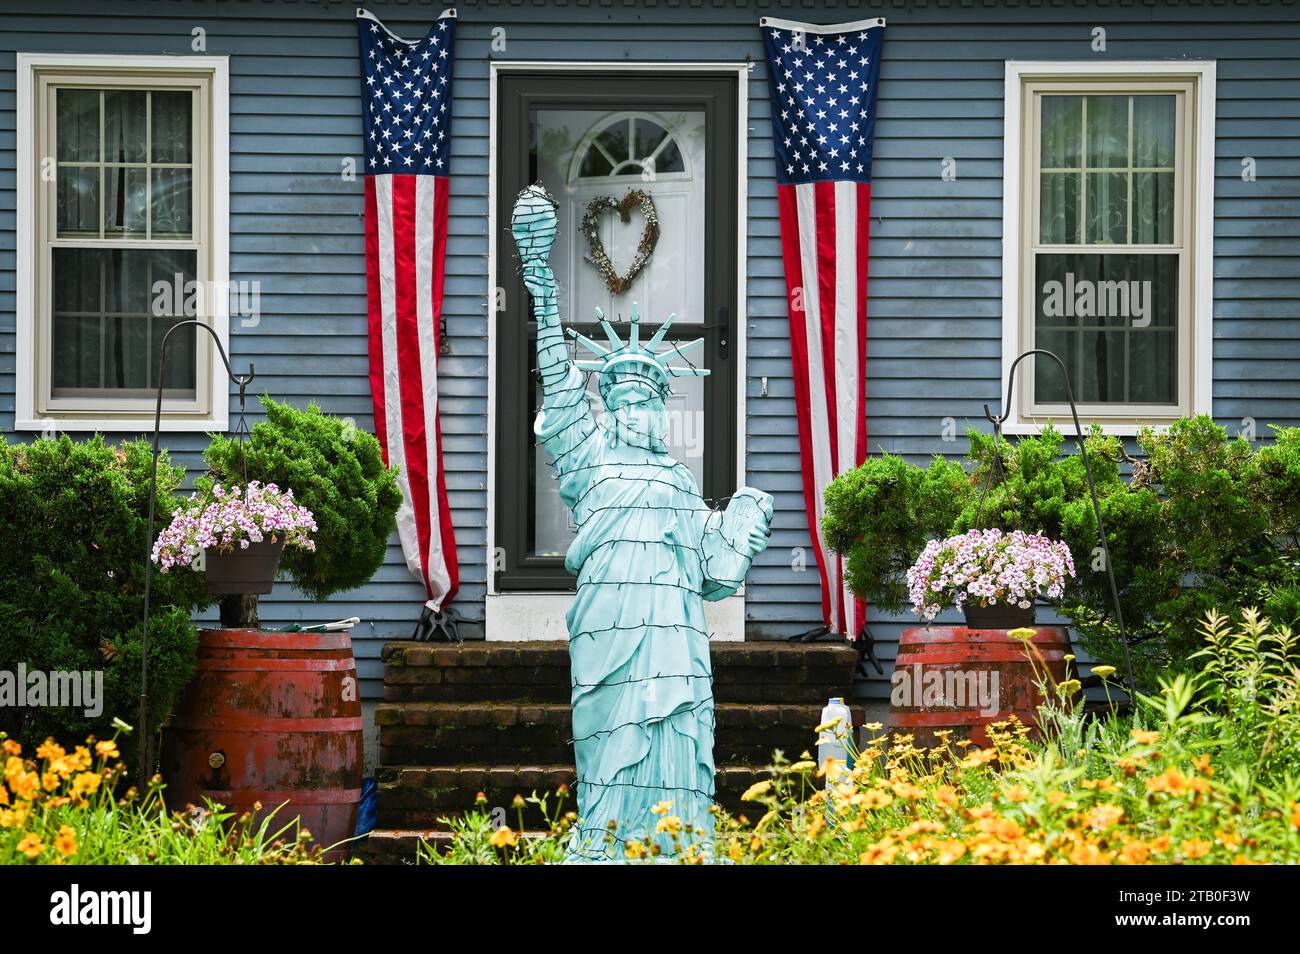 Maison décorée avec la Statue de la liberté pendant le Bristol, Rhode Island, USA, quatrième de juillet Parade, Nouvelle Angleterre USA. Banque D'Images